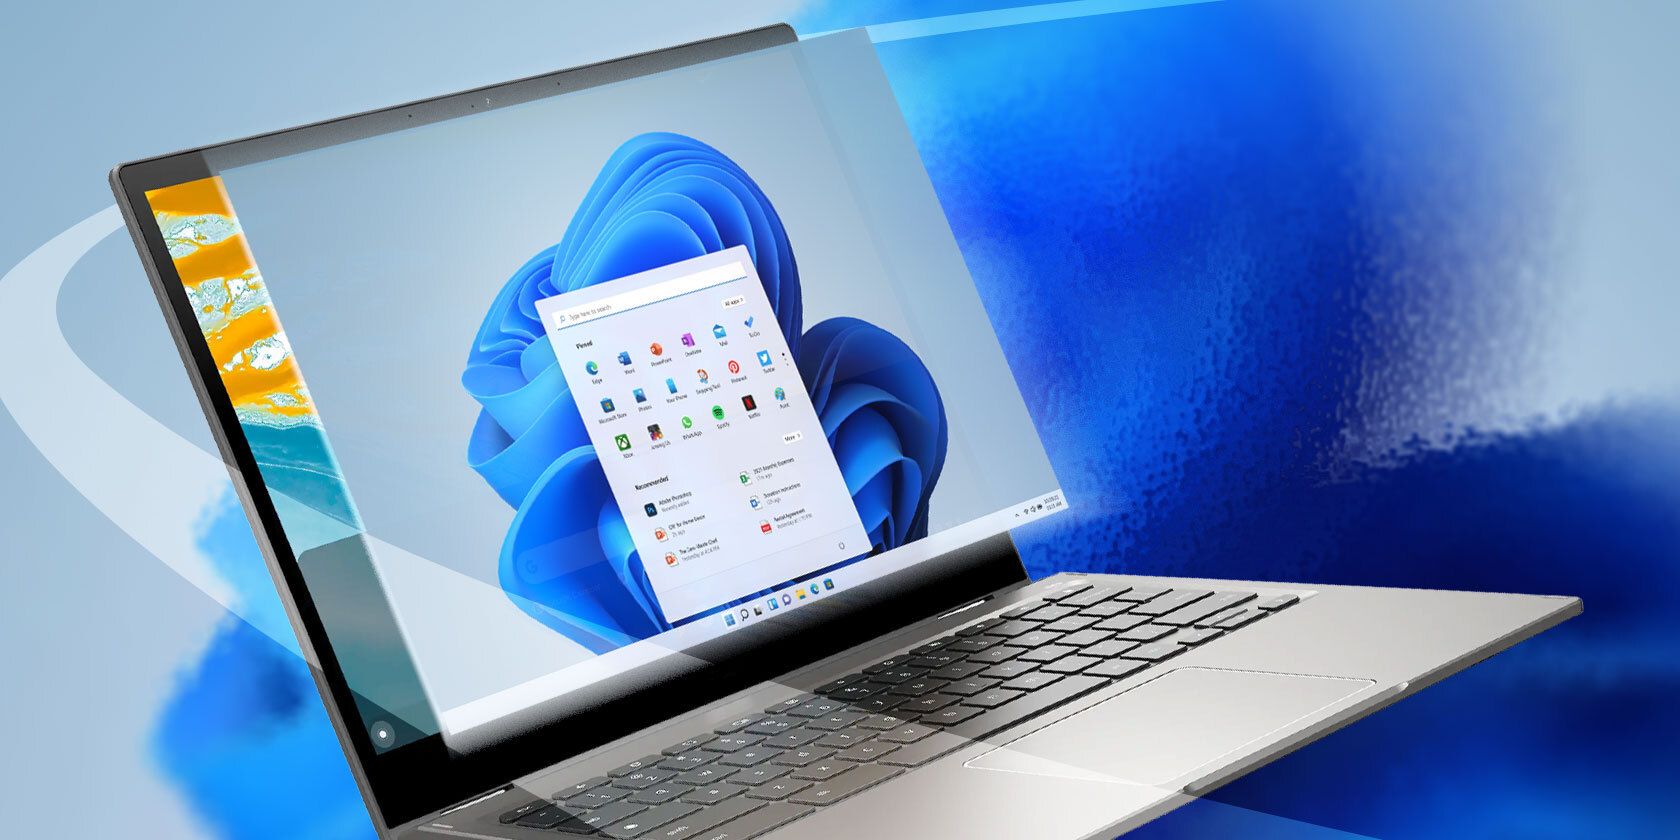 Ένα ανοιχτό Chromebook που εμφανίζει μια έκδοση των Windows στην οθόνη